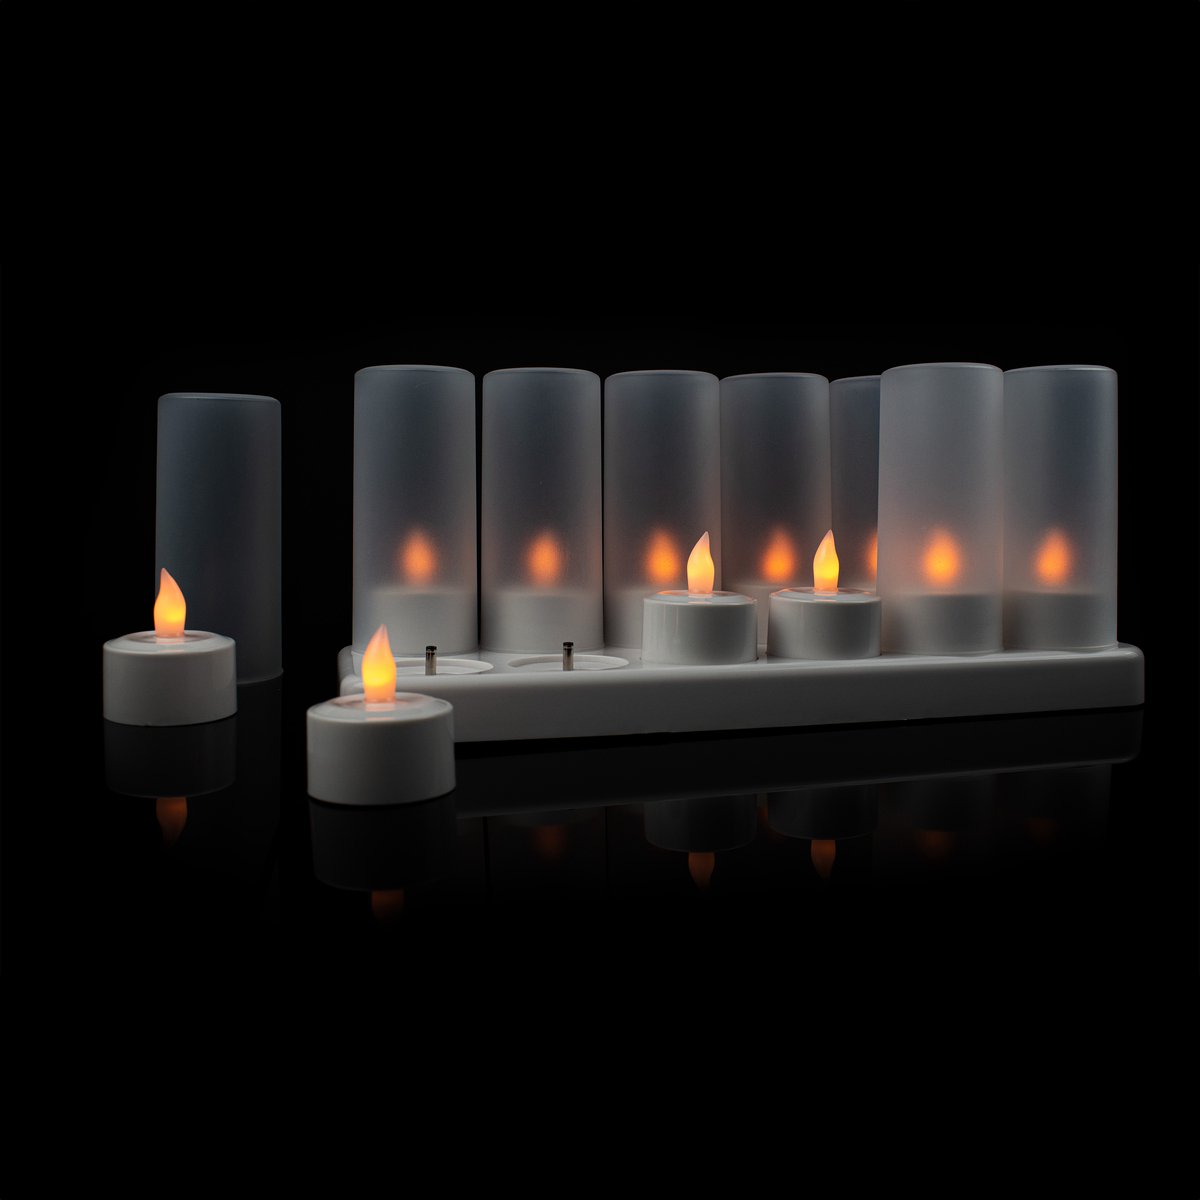 12 bougies Led Bougie Rechargeable Électrique Led Flamme Clignotante Avec  Station de Charge Décoration